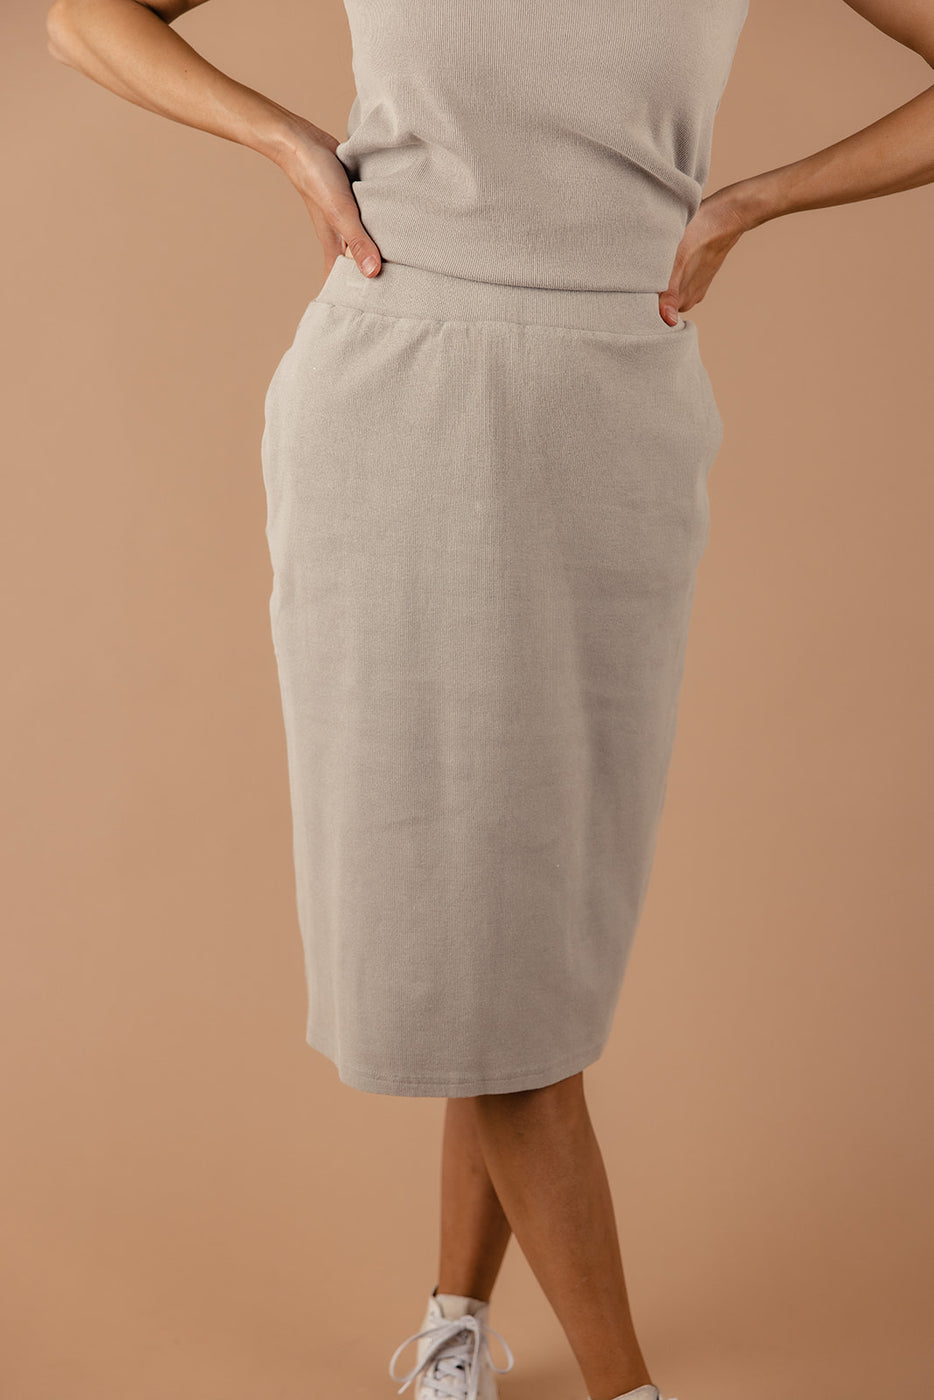 a woman wearing a skirt